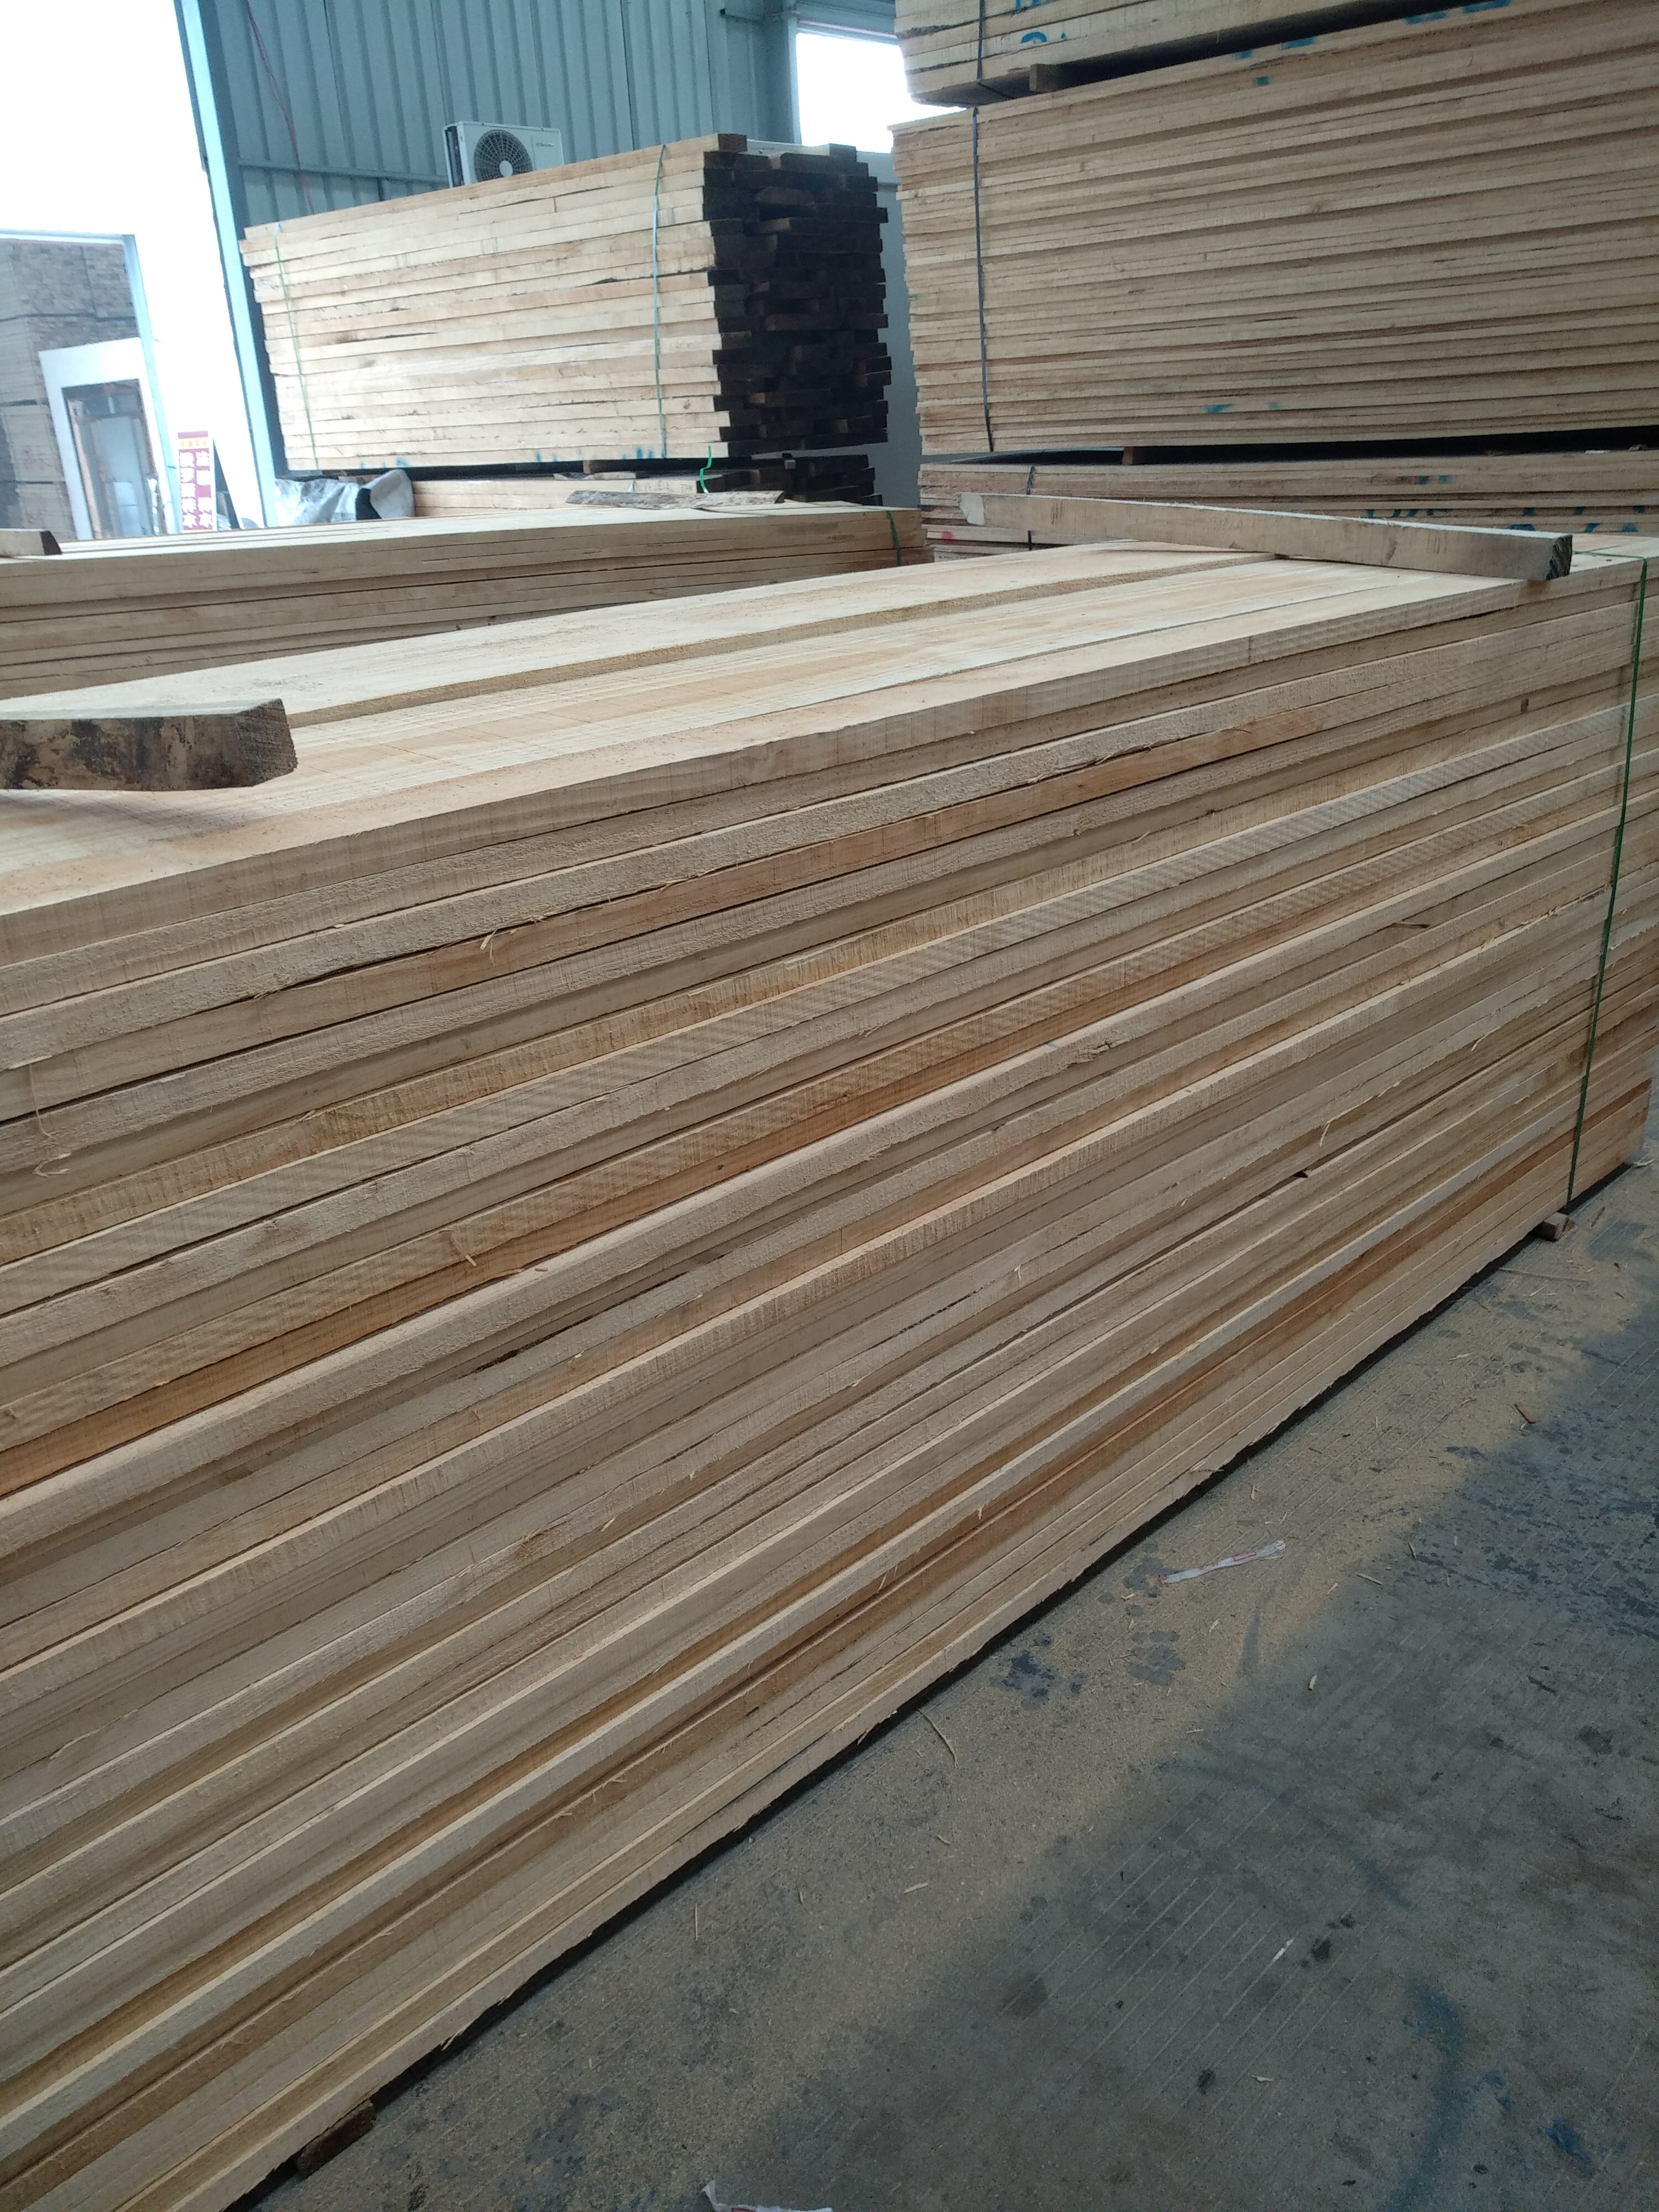 供应樟子松木板材 樟子松规格板材 俄罗斯樟子松木板材 床板 烘干板材 樟子松木板材厂家